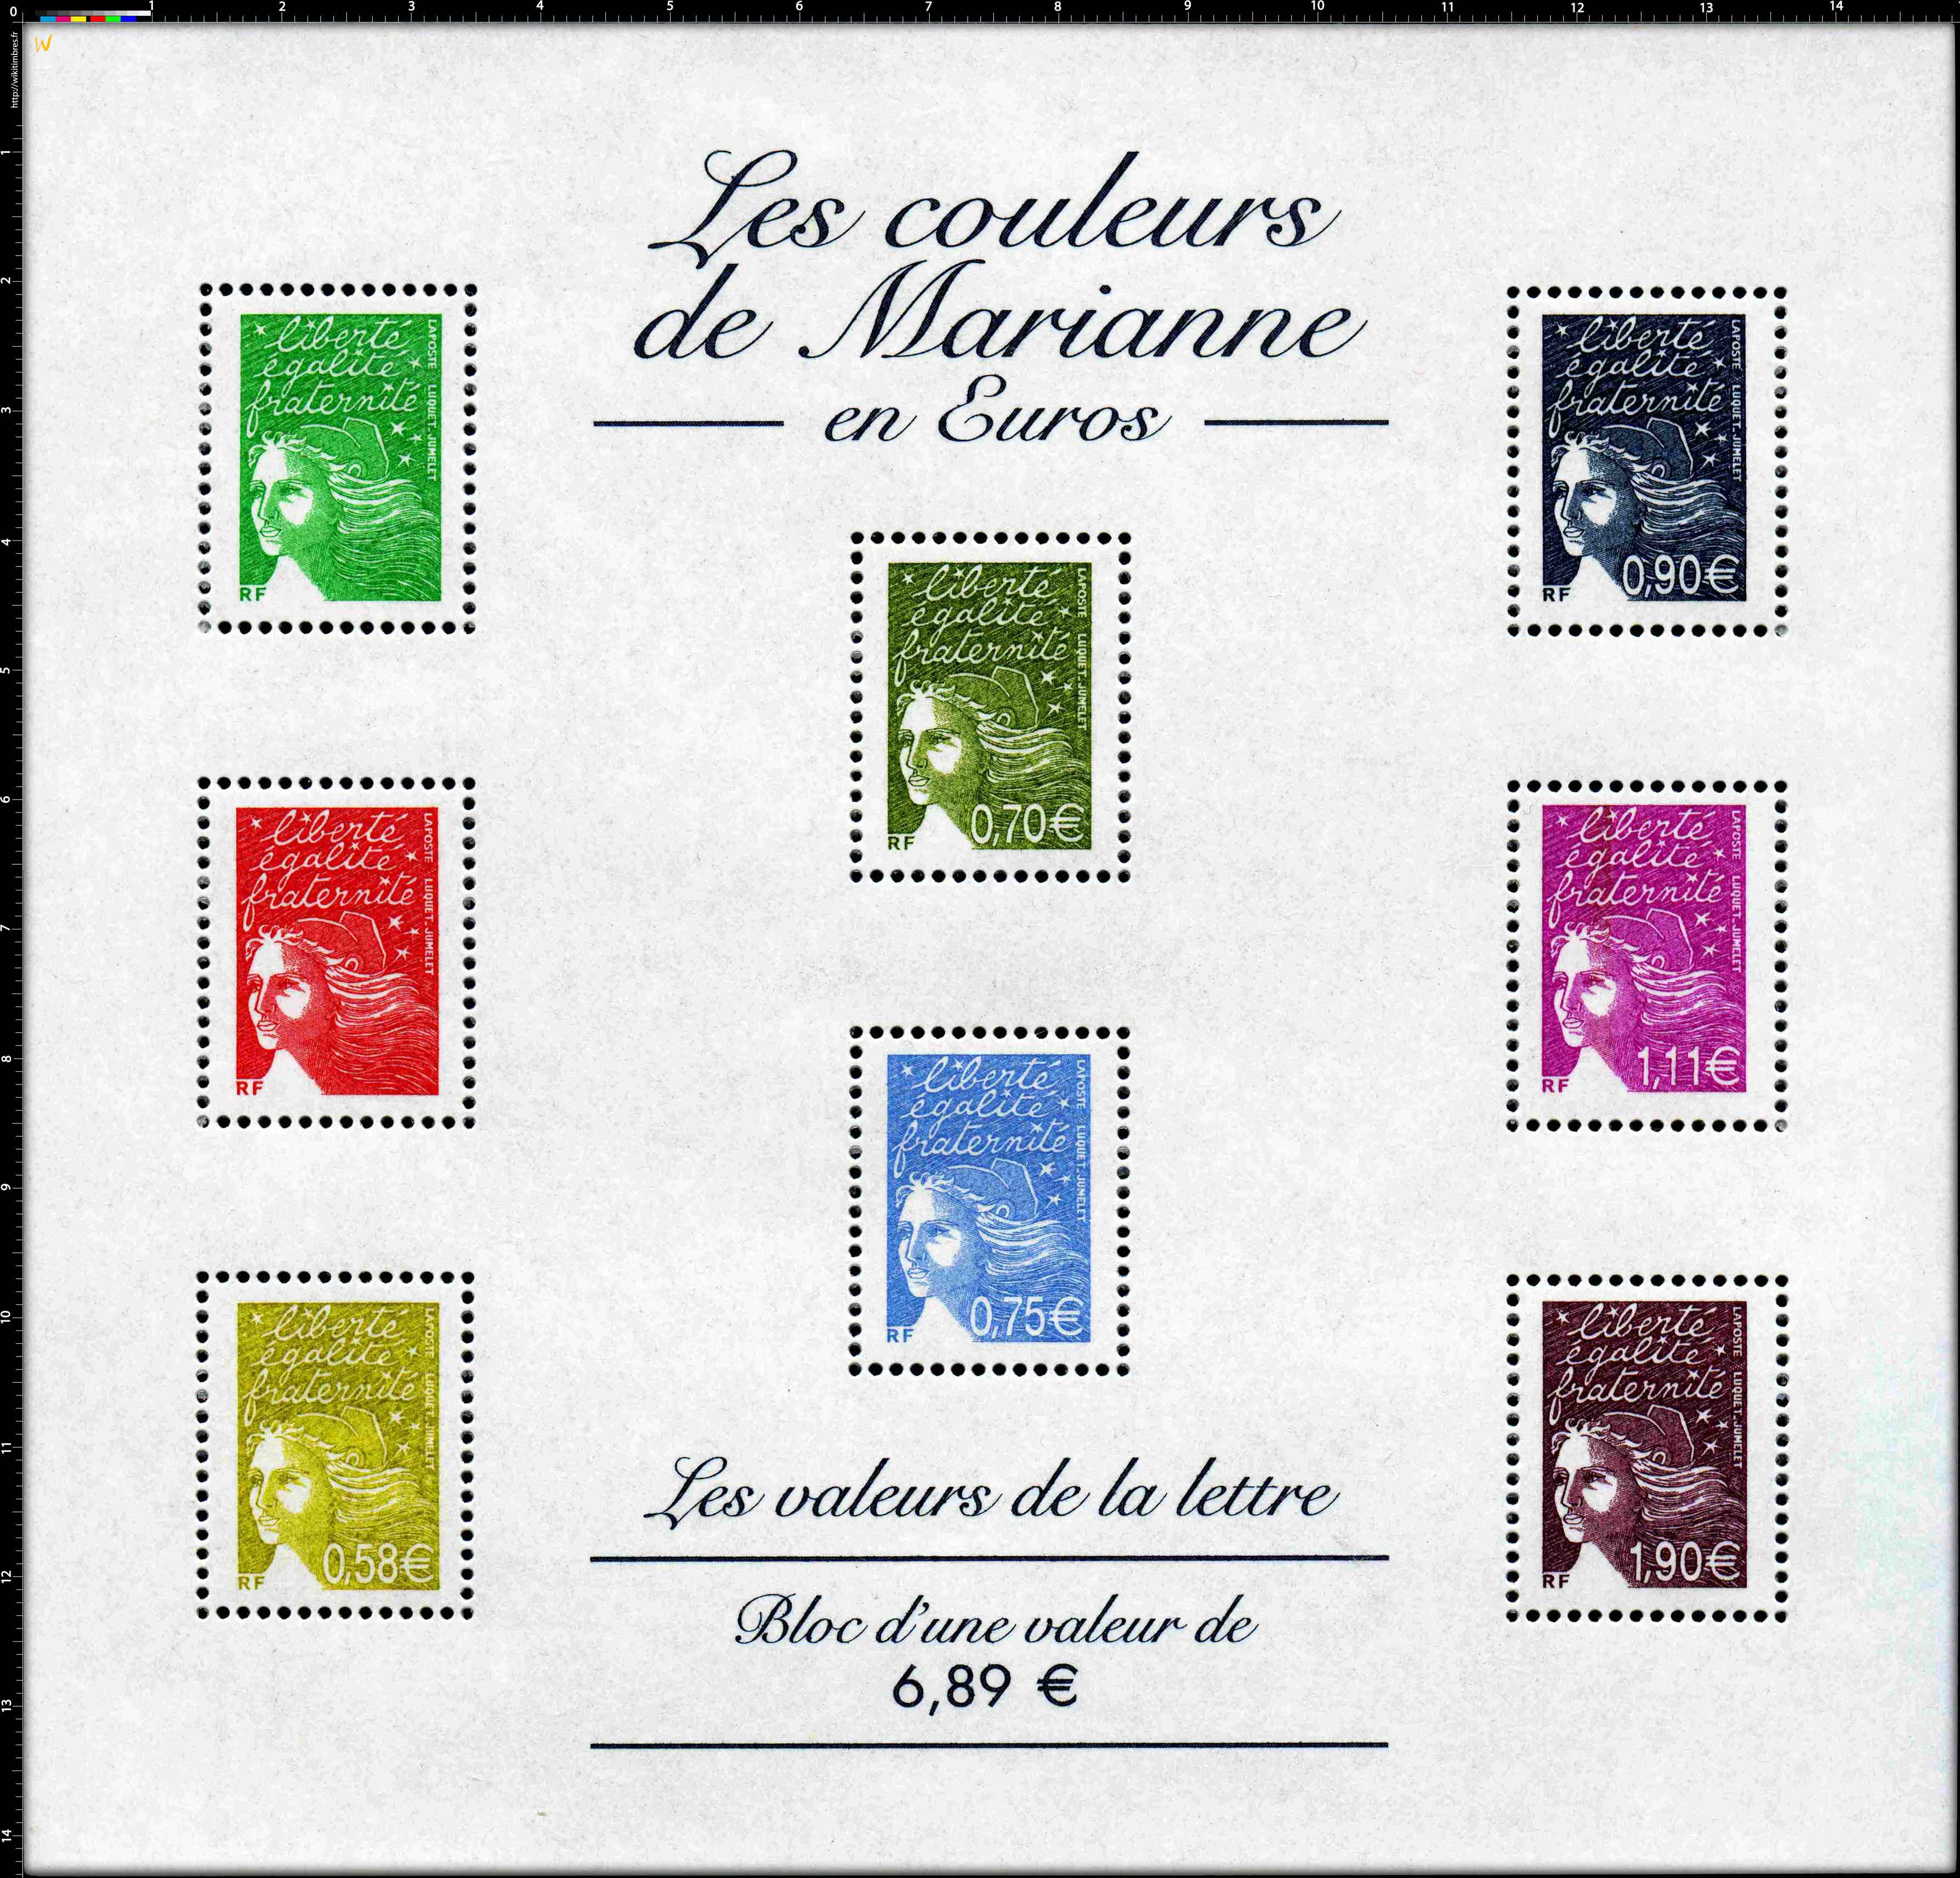 Les couleurs de Marianne en Euros